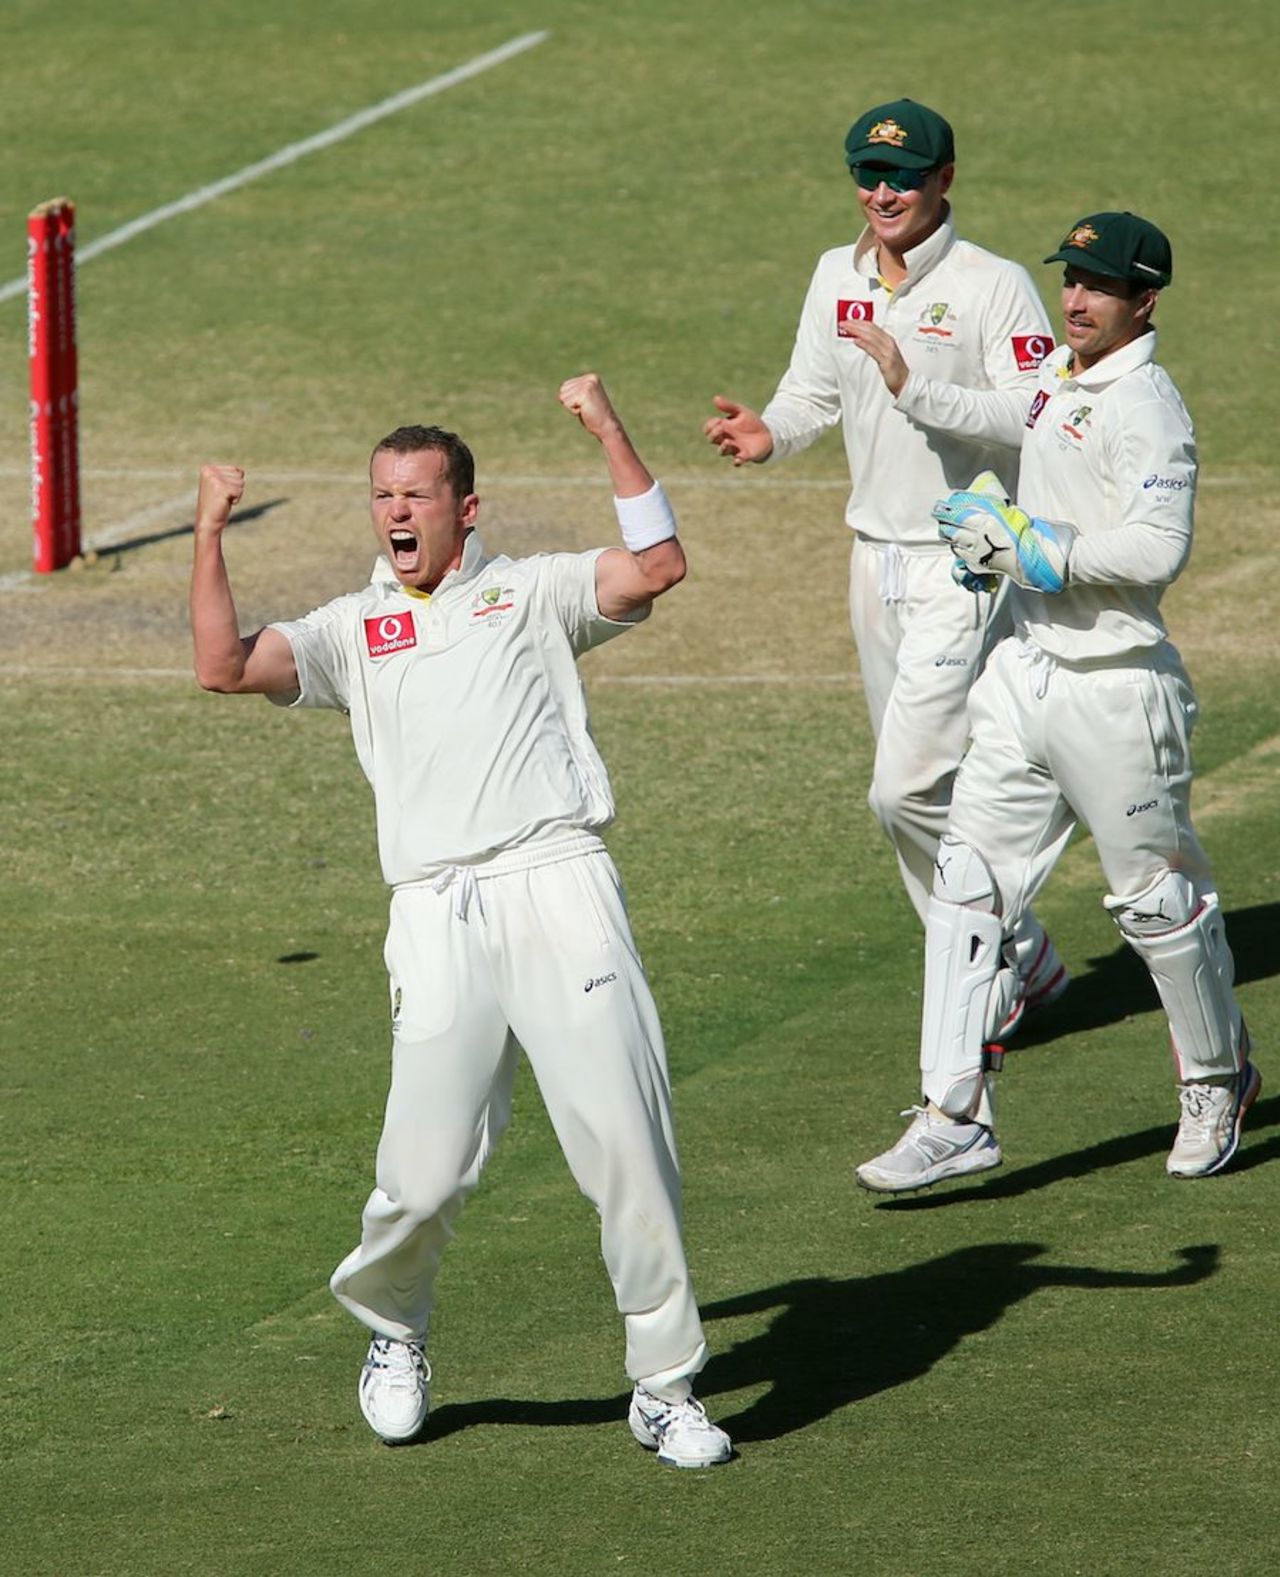 Peter Siddle celebrates after dismissing Dale Steyn, Australia v South Africa, 2nd Test, Adelaide, 5th day, November 26, 2012